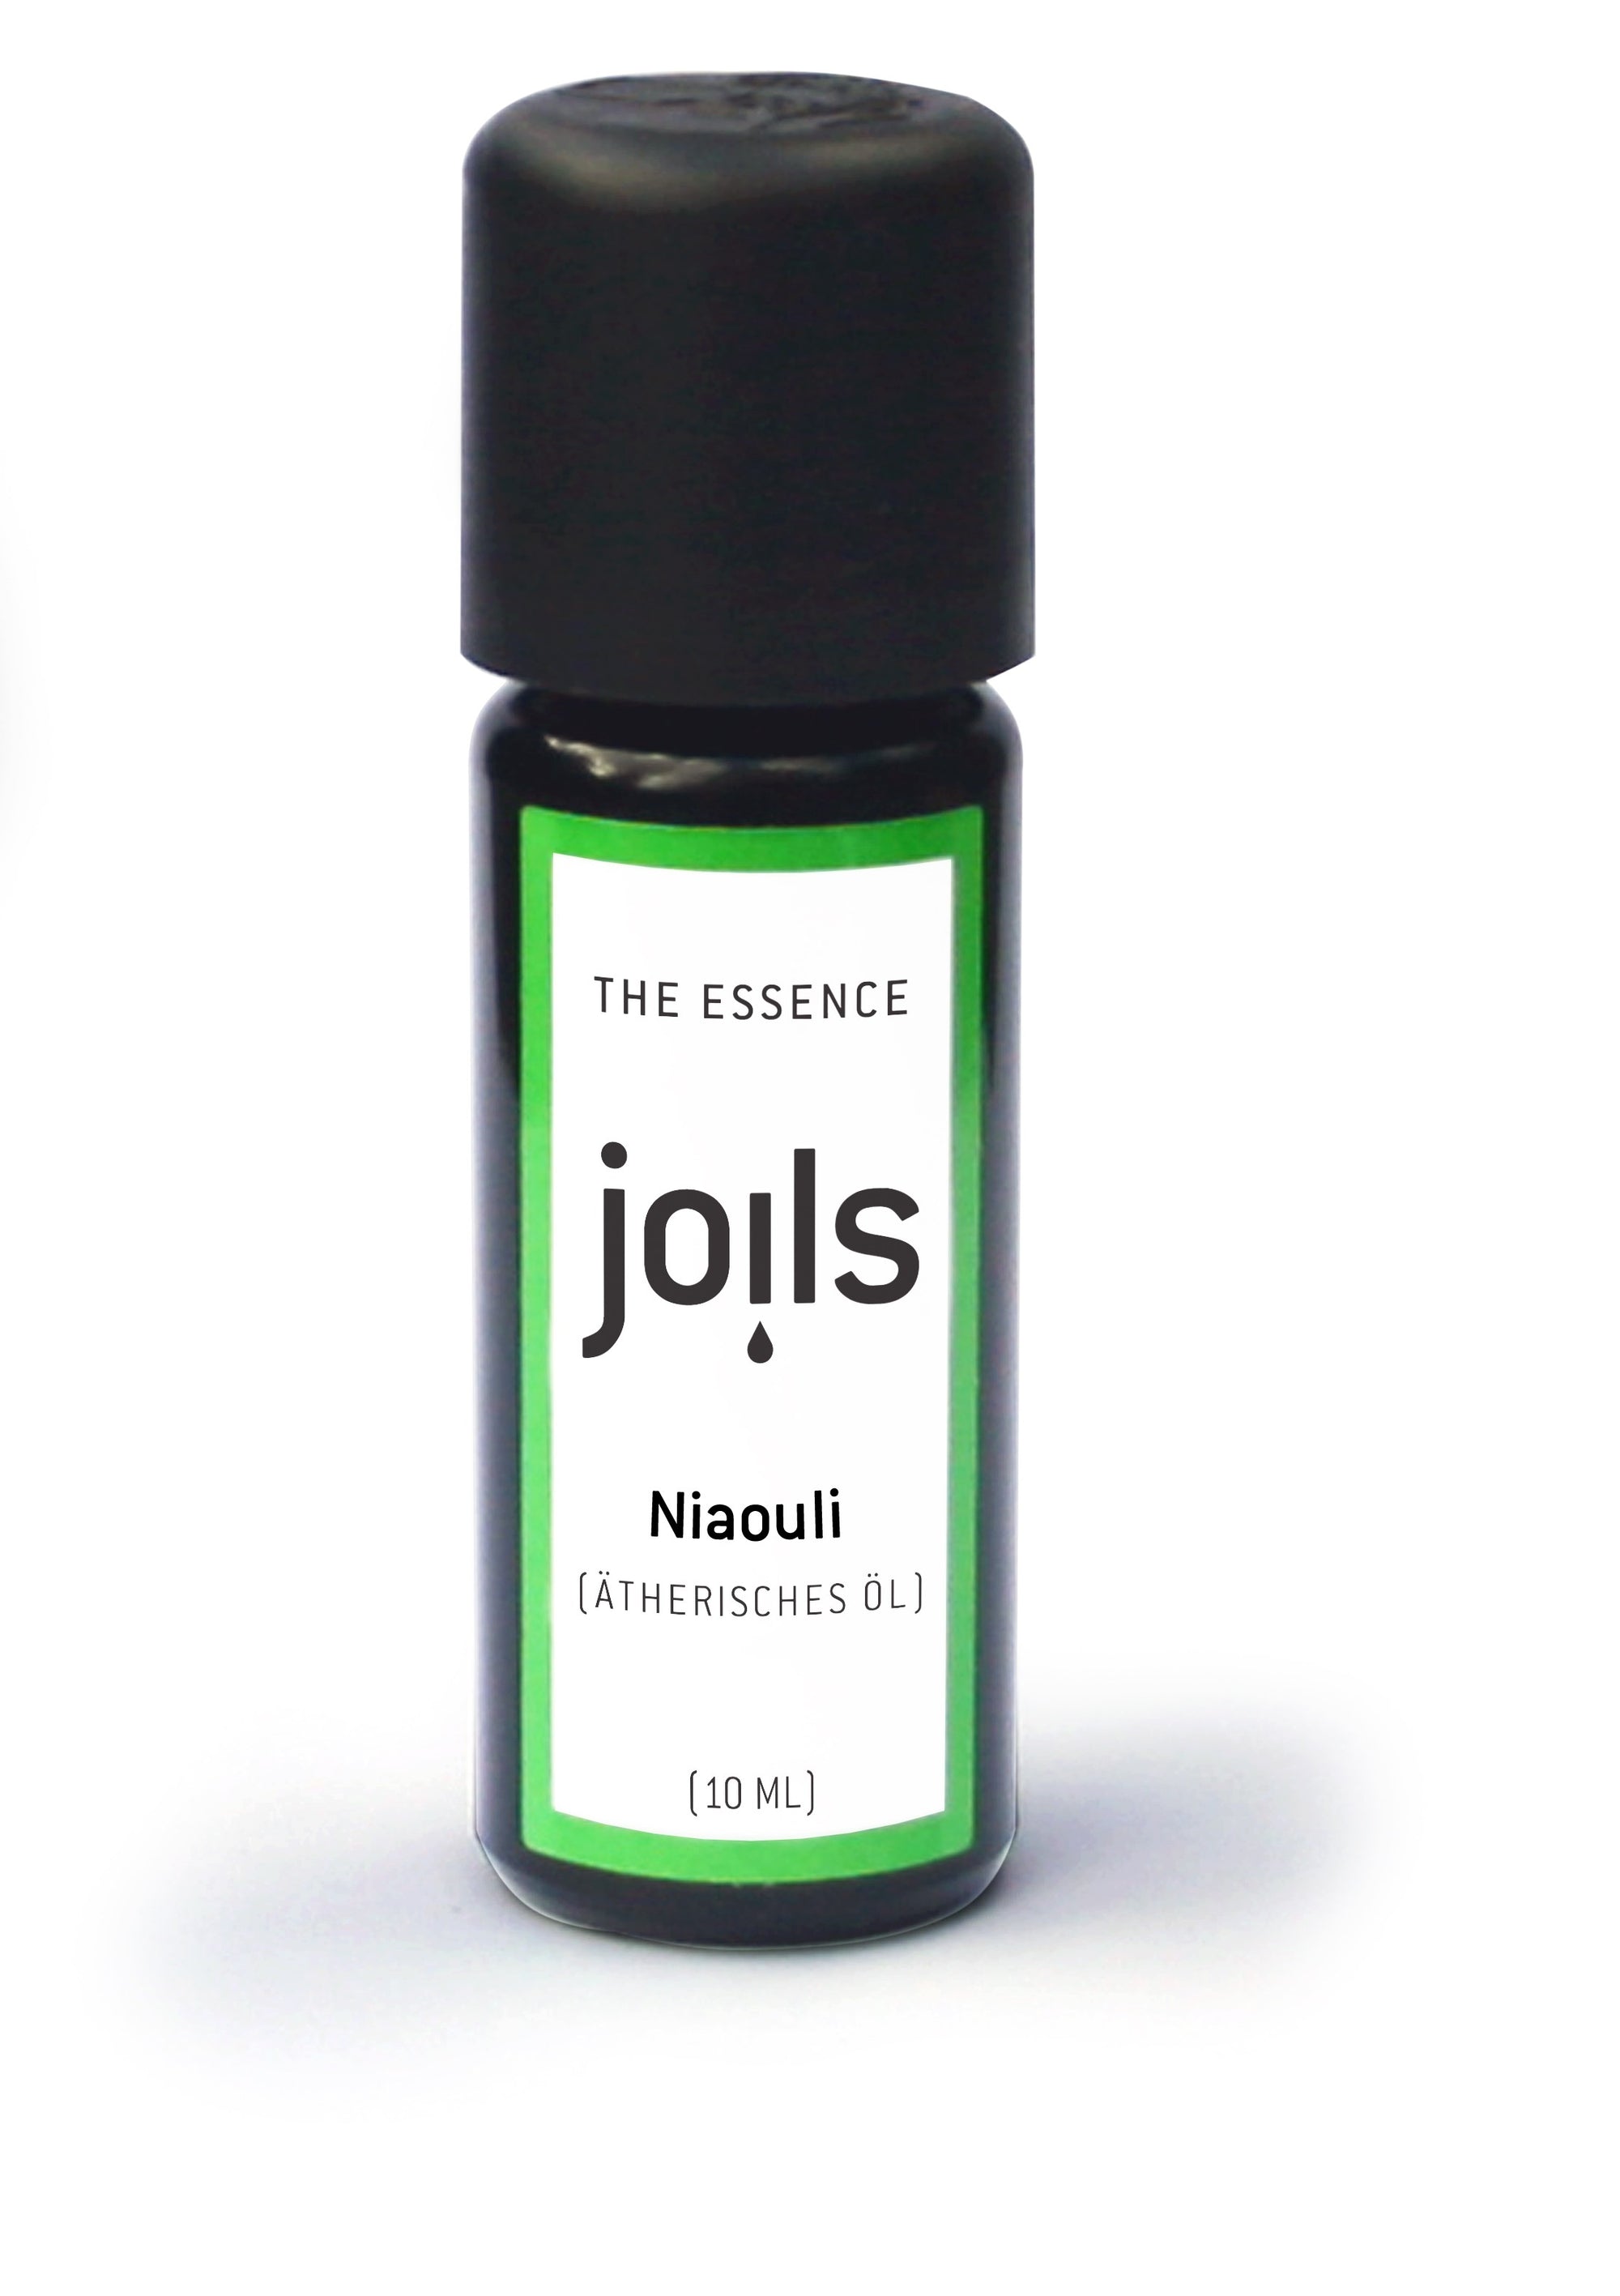 NIAOULI 10ml - Joils